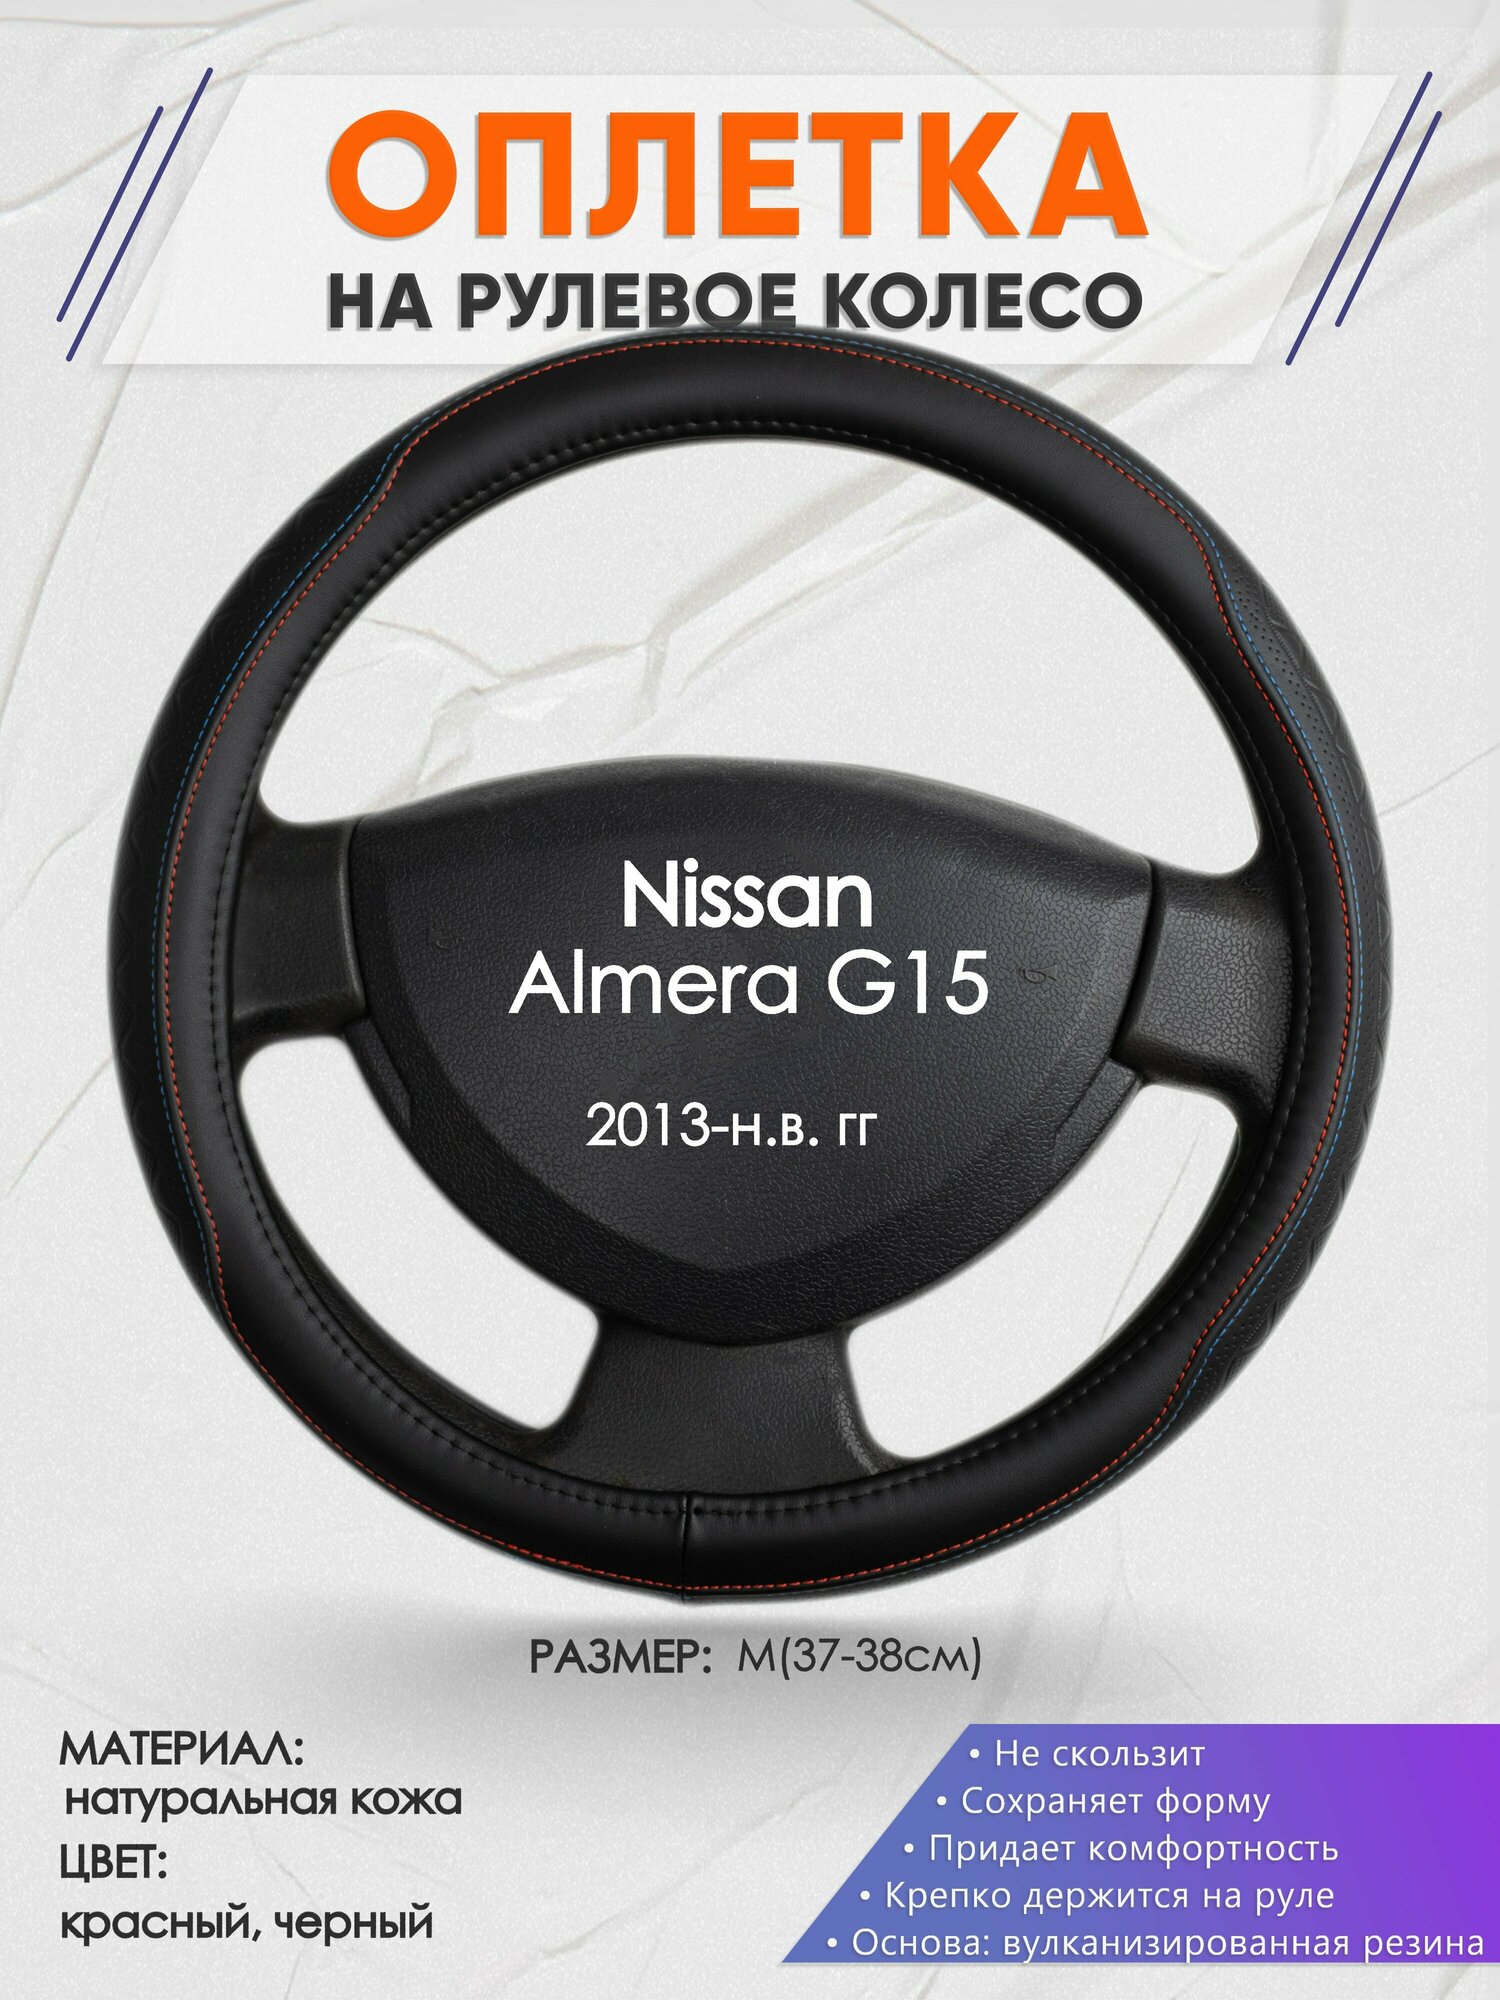 Оплетка на руль для Nissan Almera G15(Ниссан Альмера) 2013-н. в, M(37-38см), Натуральная кожа 89